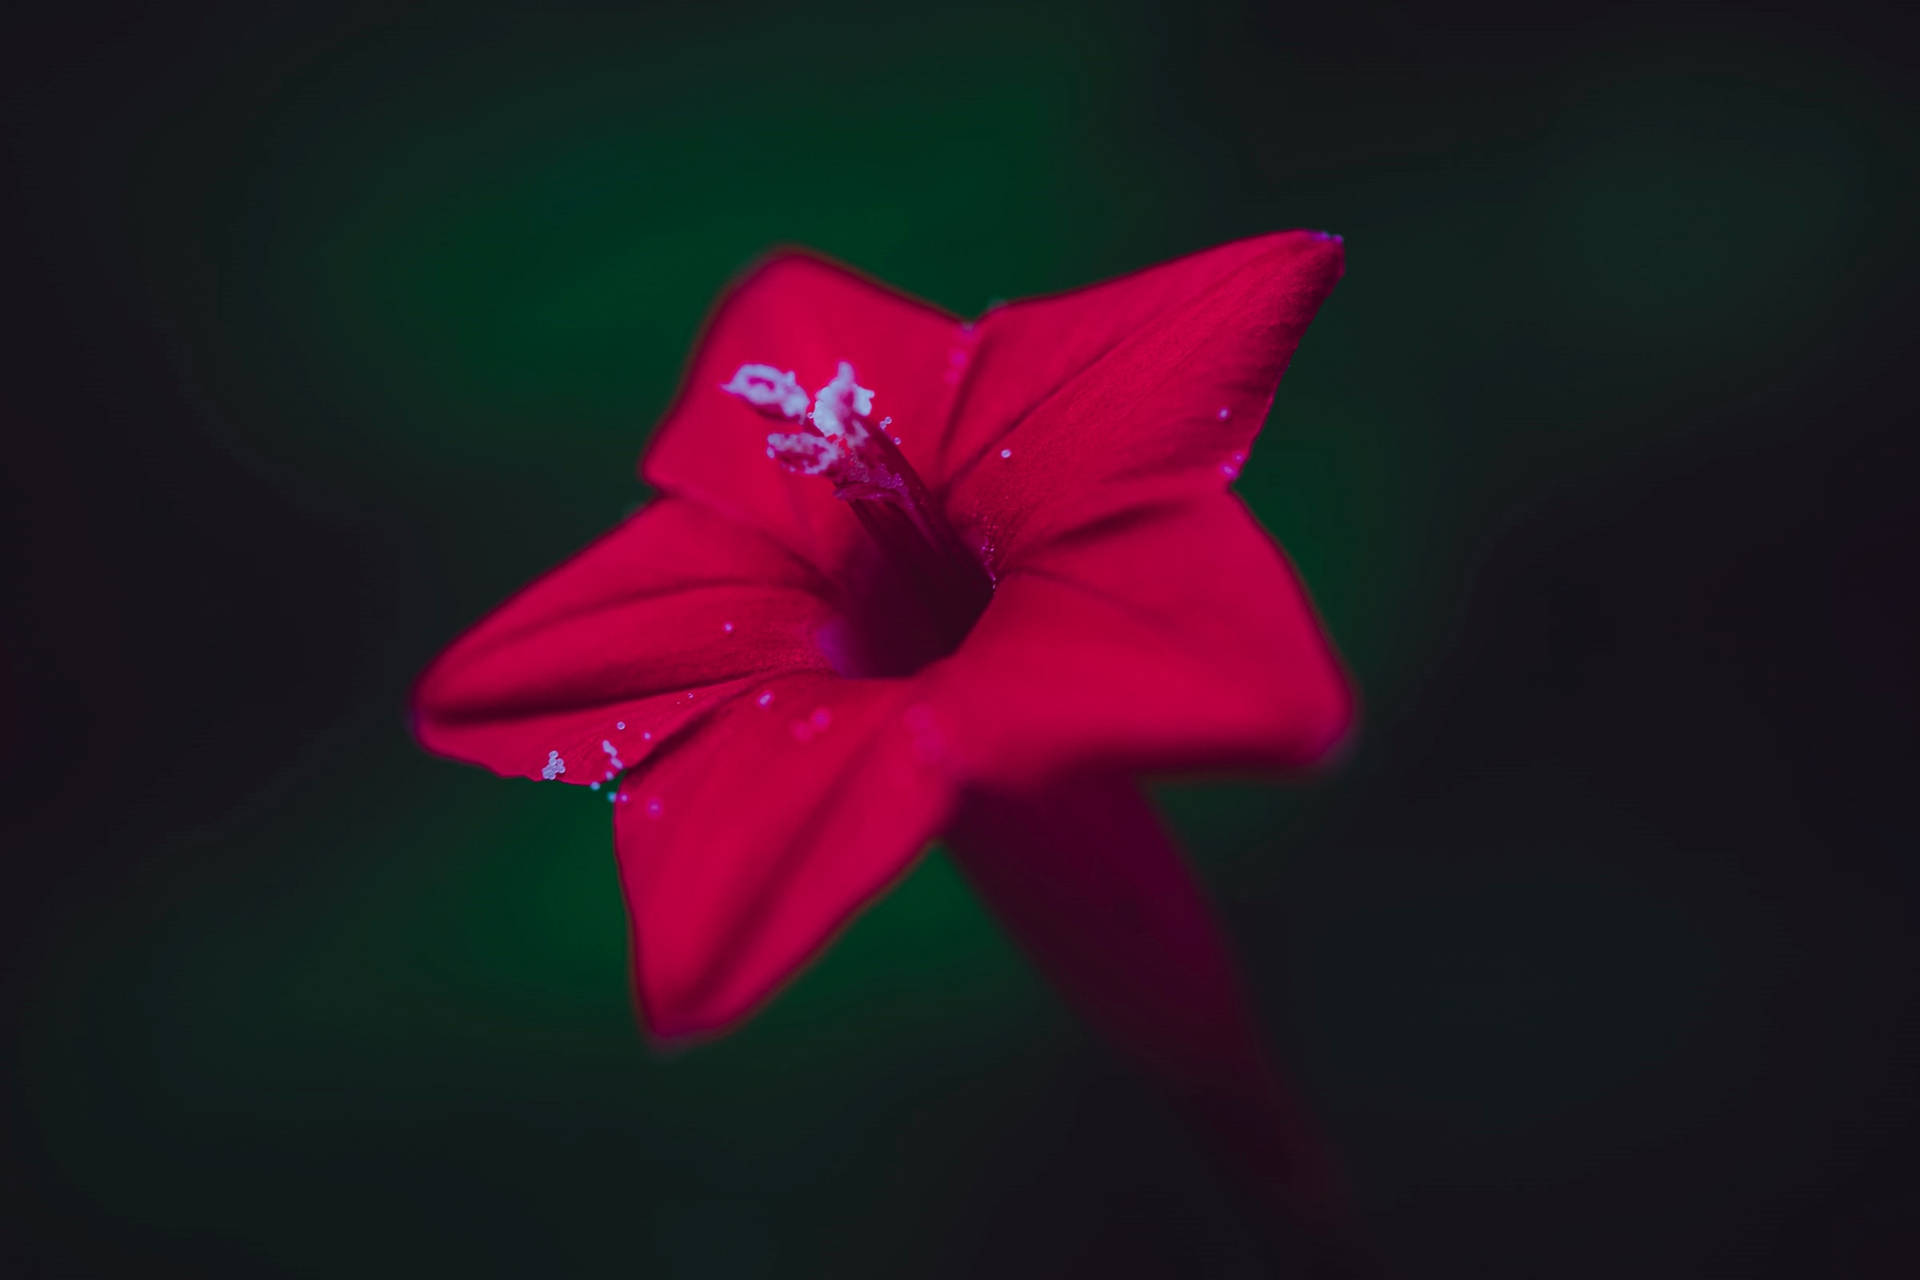 Red Star-like Flower